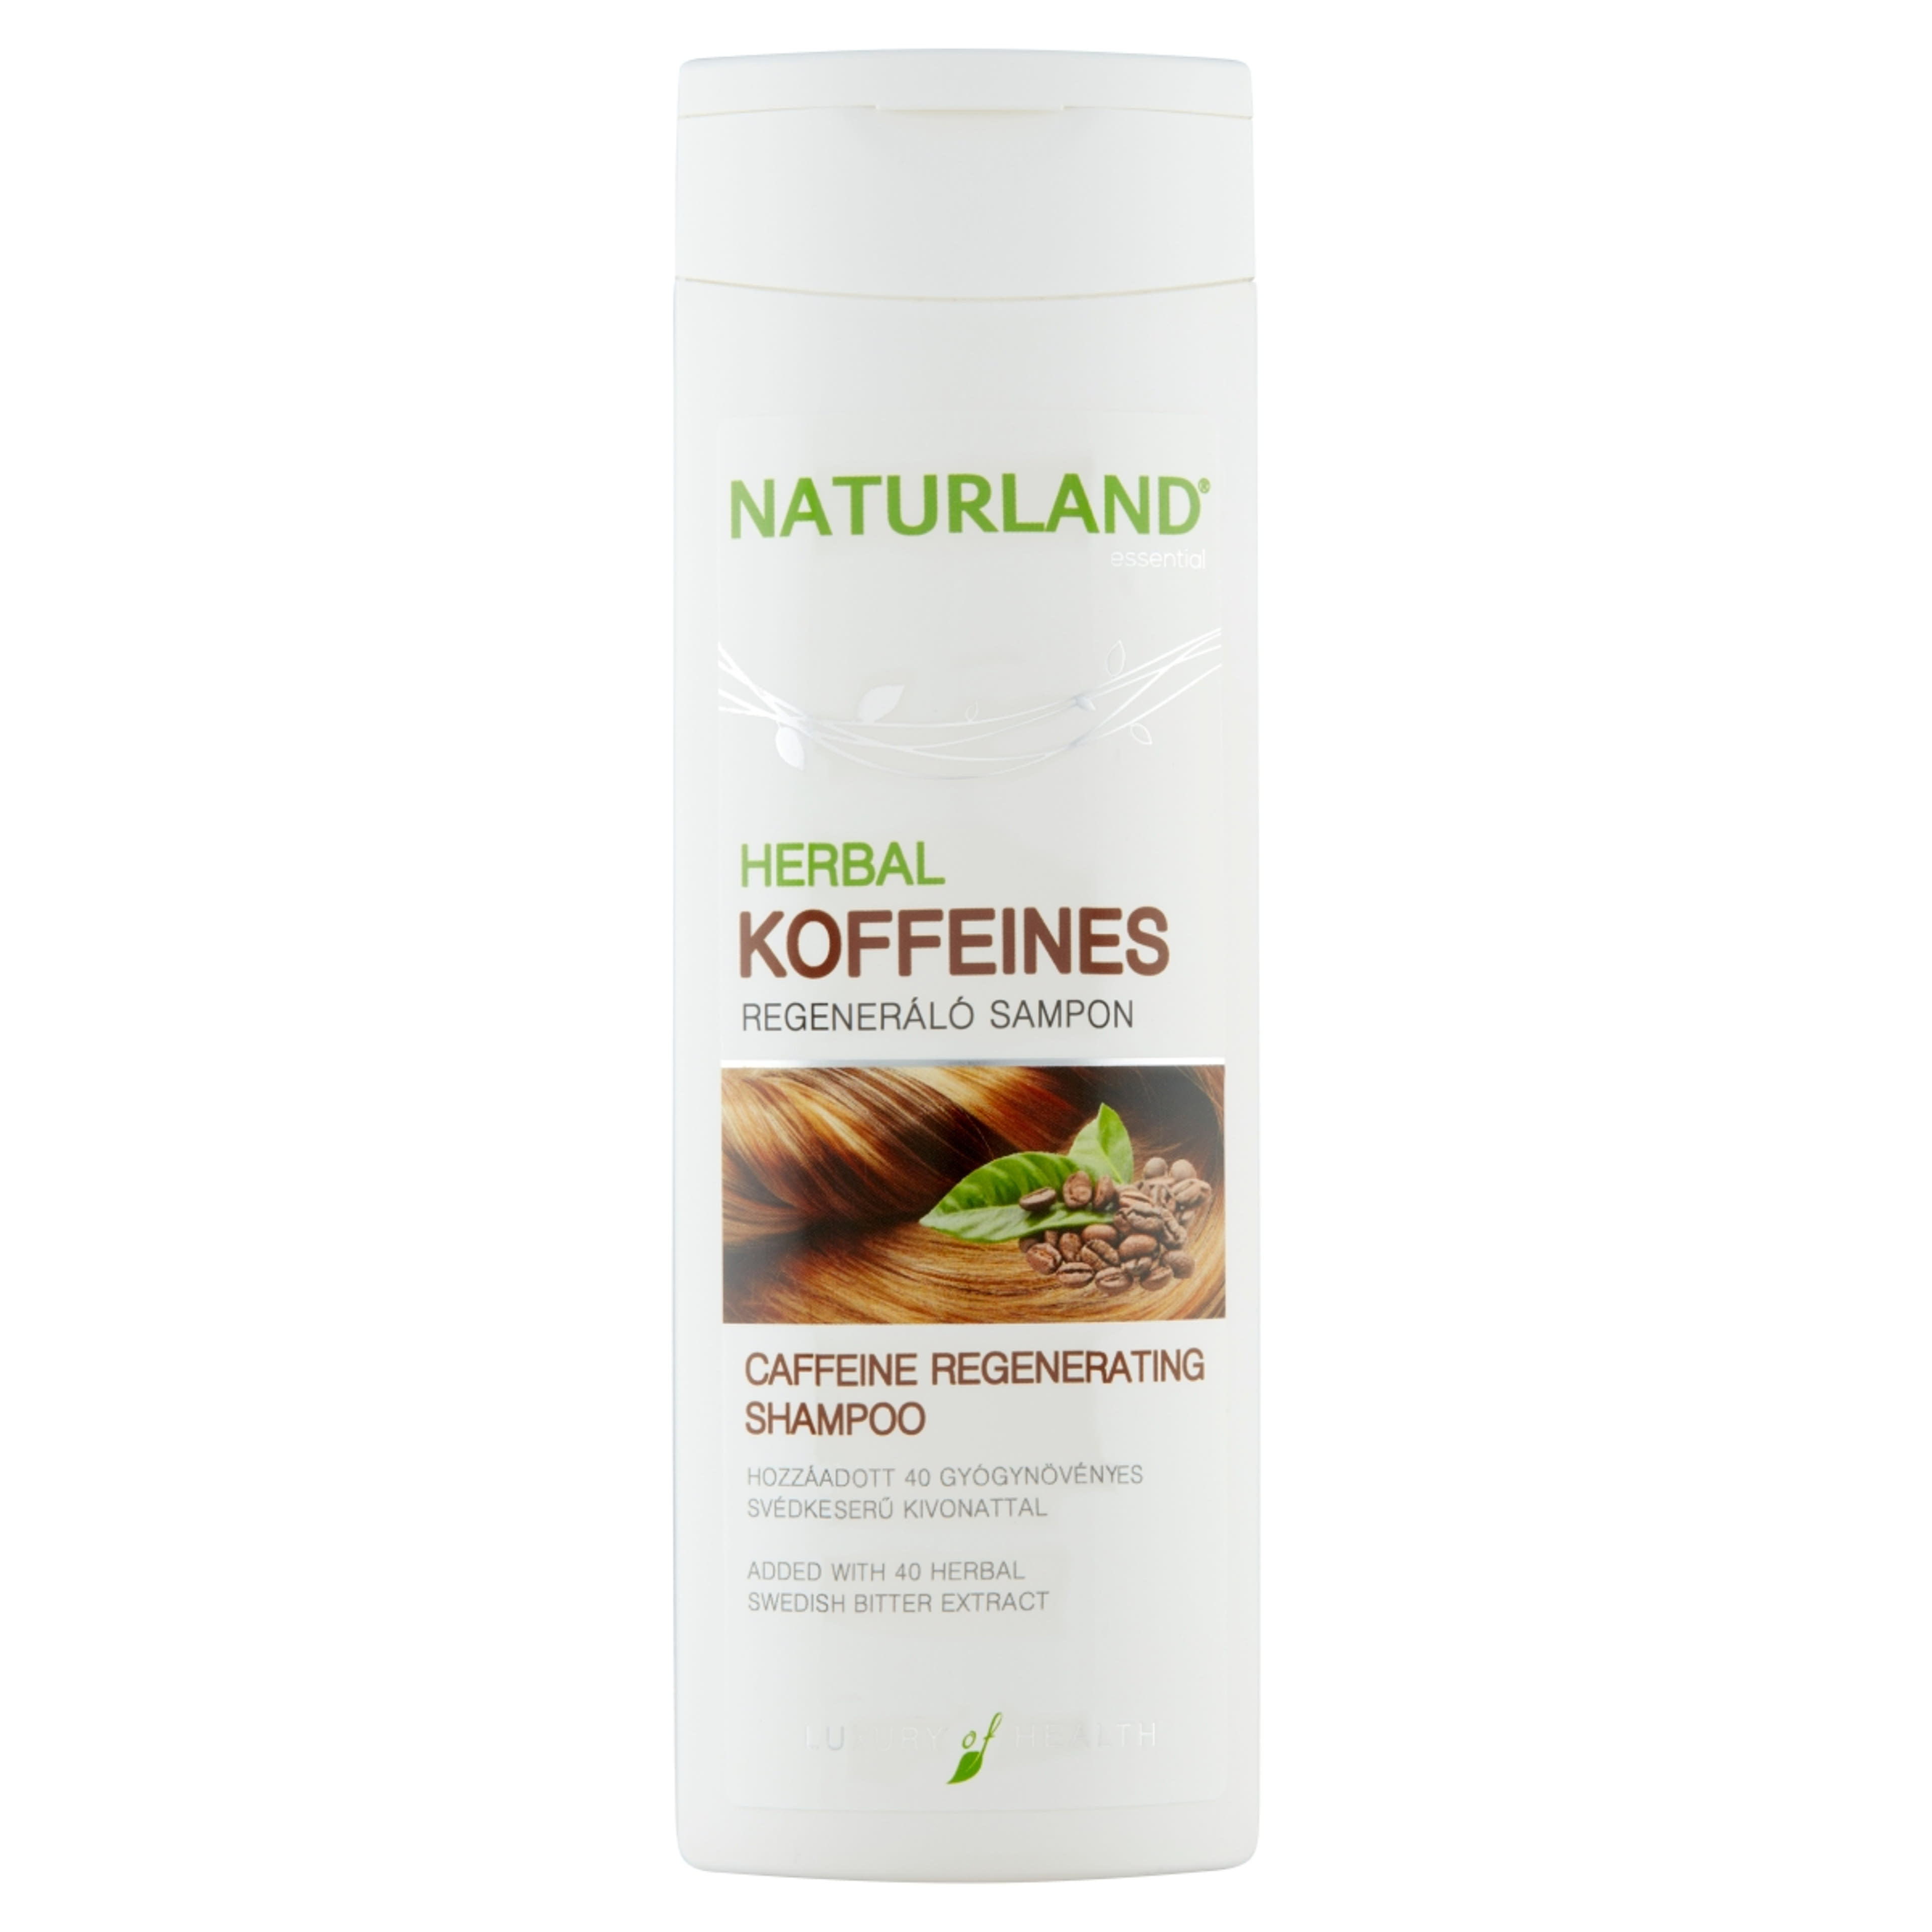 Naturland Herbal koffeines sampon - 200 ml